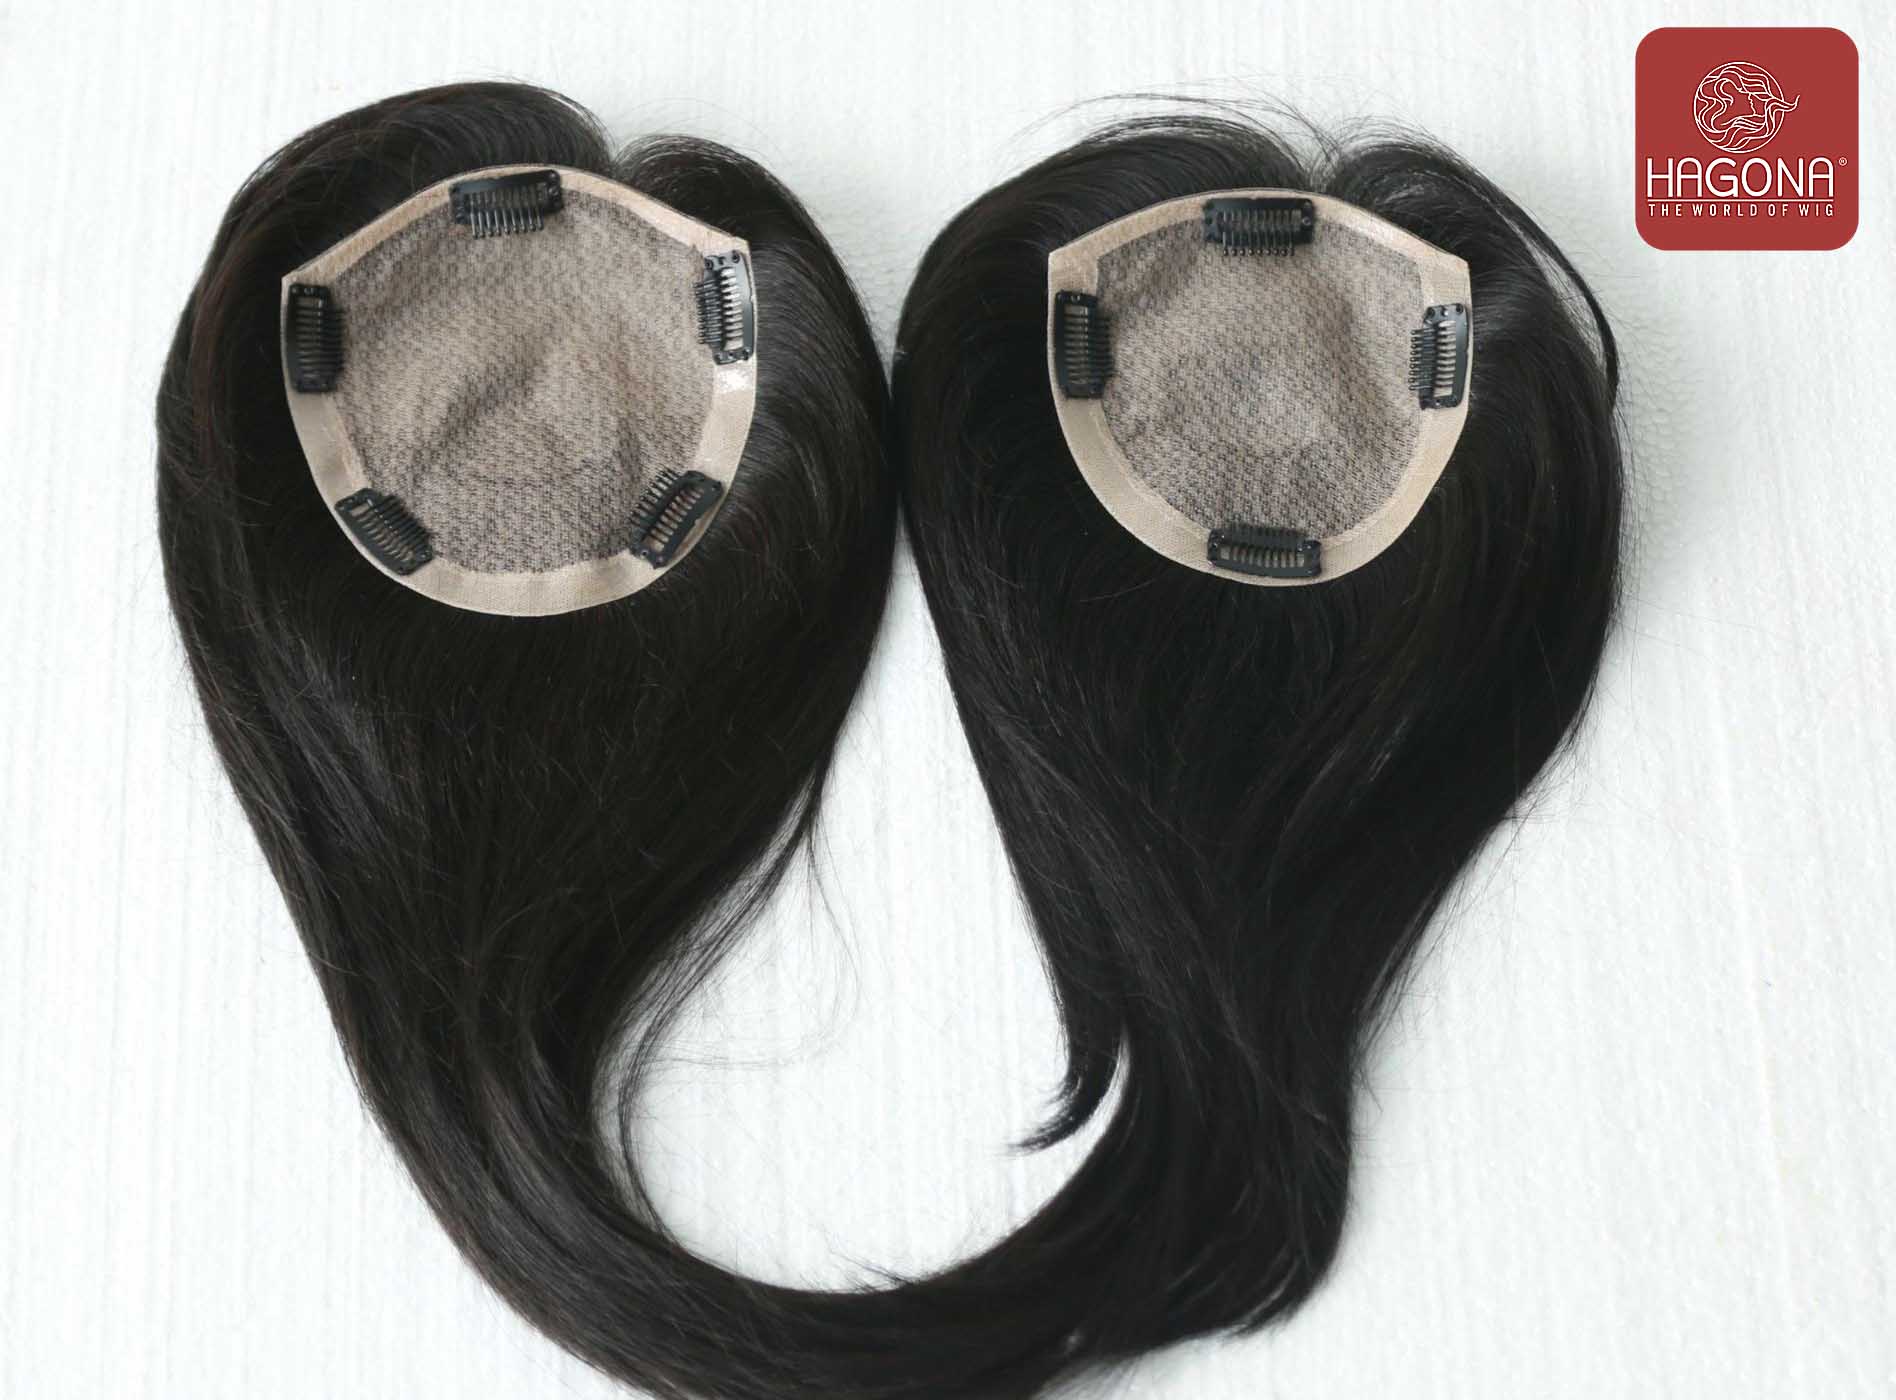 Tóc giả nữ sẽ giúp bạn thực hiện ước mơ có được mái tóc dày và đầy sức sống. Dù bạn muốn tóc ngắn phong cách pixie hay tóc dài và xoăn thì tóc giả nữ sẽ giúp bạn thực hiện được mong muốn này. Hãy xem ngay hình ảnh liên quan để chọn cho mình chiếc tóc giả nữ phù hợp nhất!